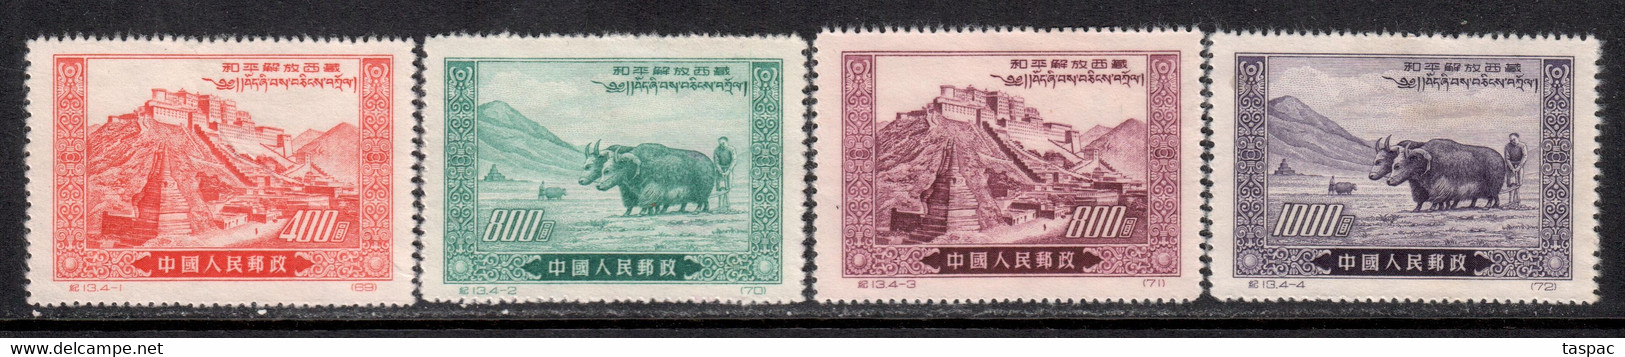 China P.R. 1952 Mi# 137-140 II (*) Mint No Gum, Hinged - Reprints - Liberation Of Tibet - Réimpressions Officielles